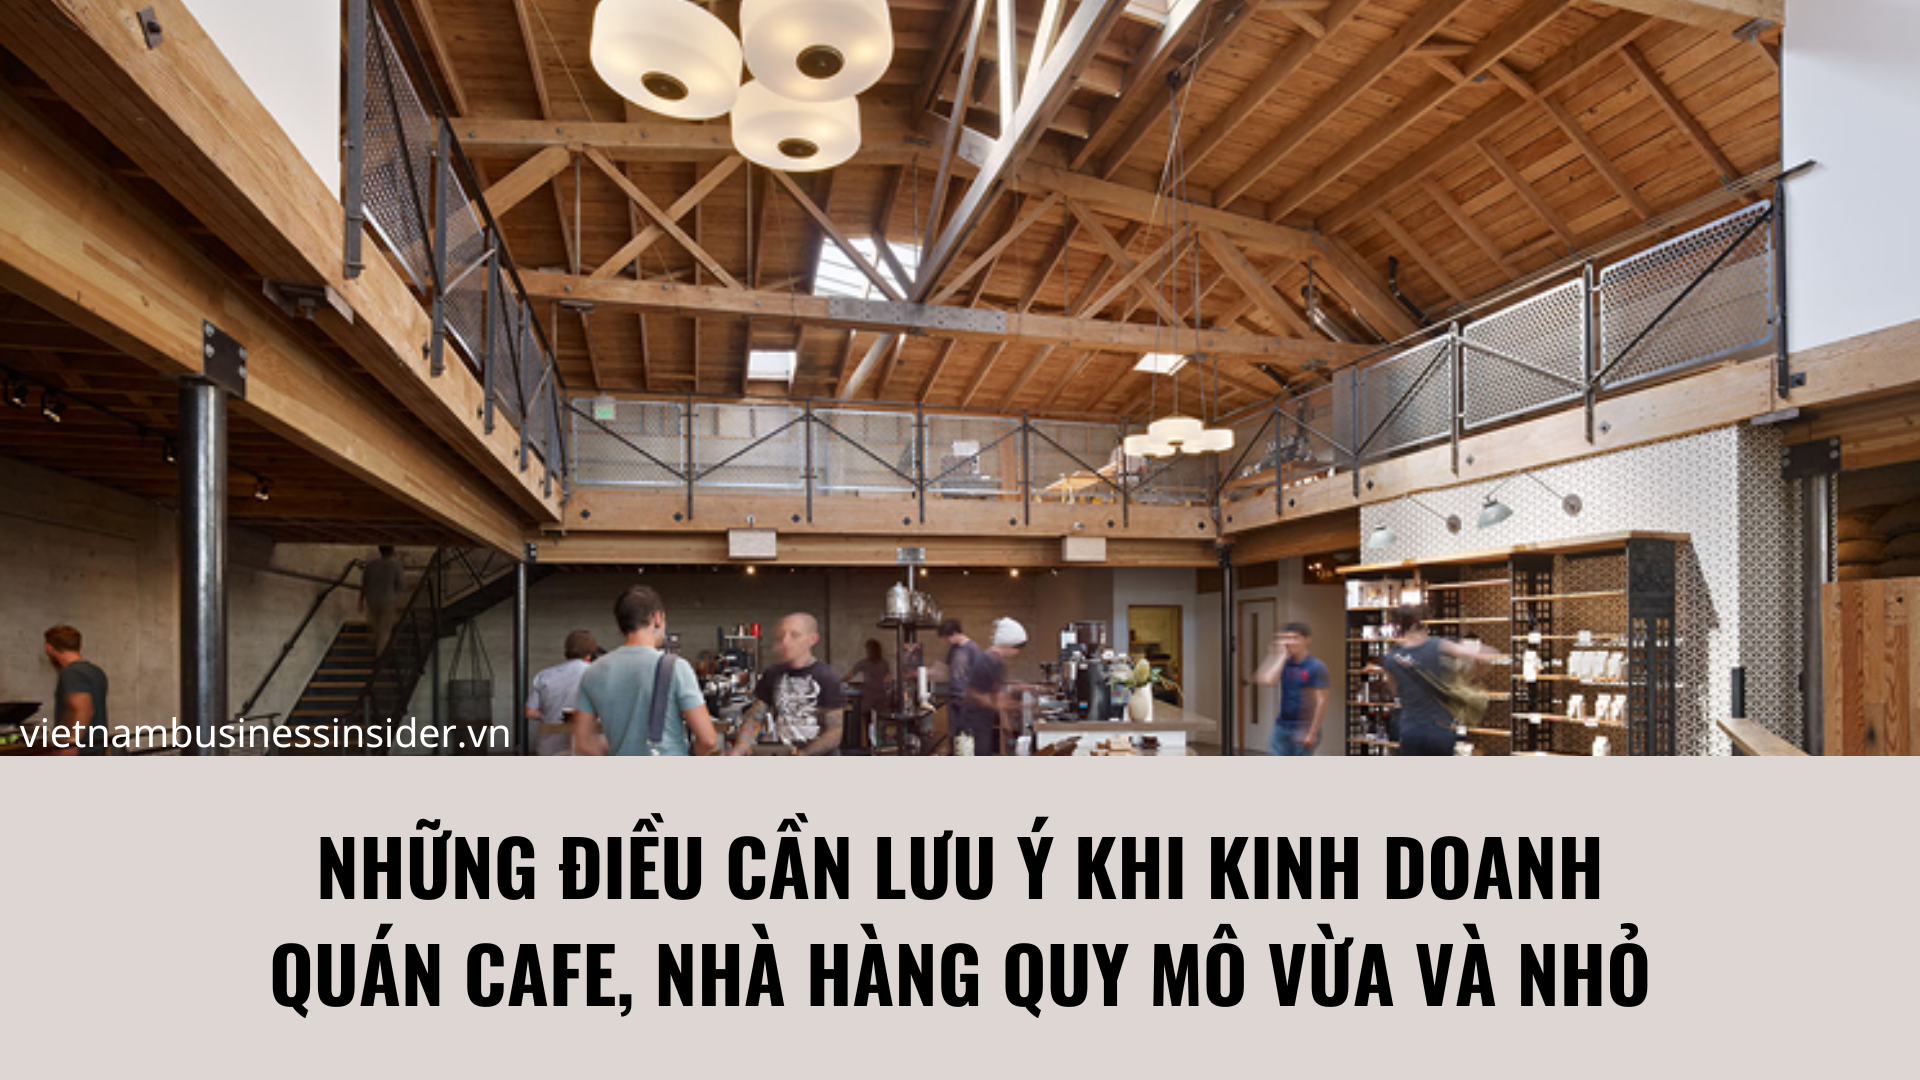 nhung-dieu-can-luu-y-khi-kinh-doanh-quan-cafe-nha-hang-quy-mo-vua-va-nho-1666573696.png